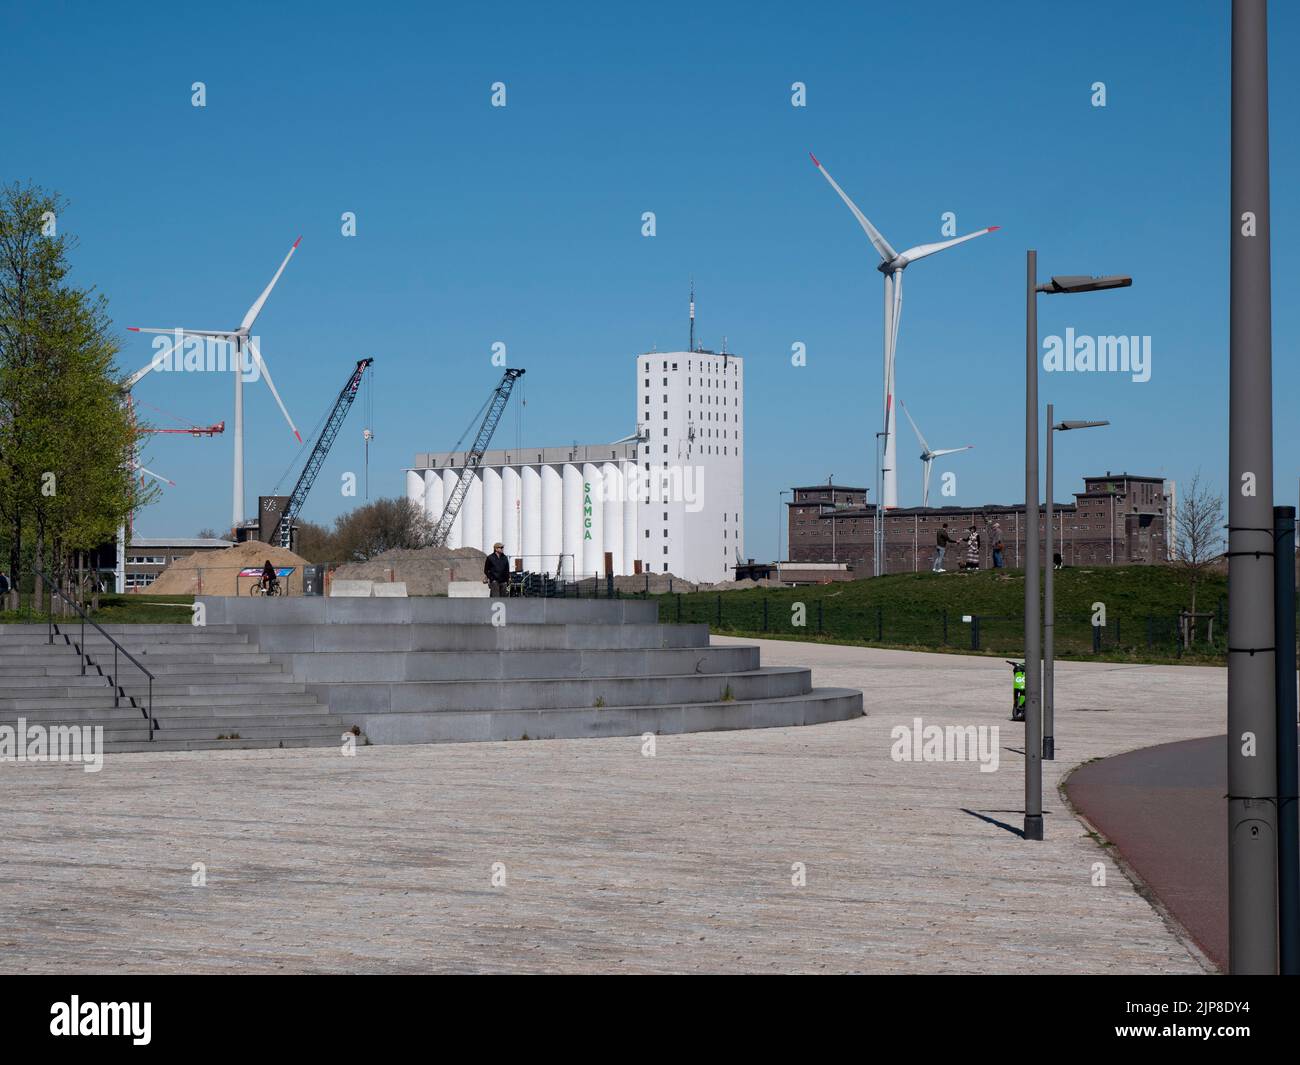 Anvers, Belgique, 17 avril 2020, les silos à céréales en béton de la société Samga sur la rive droite d'Anvers Banque D'Images